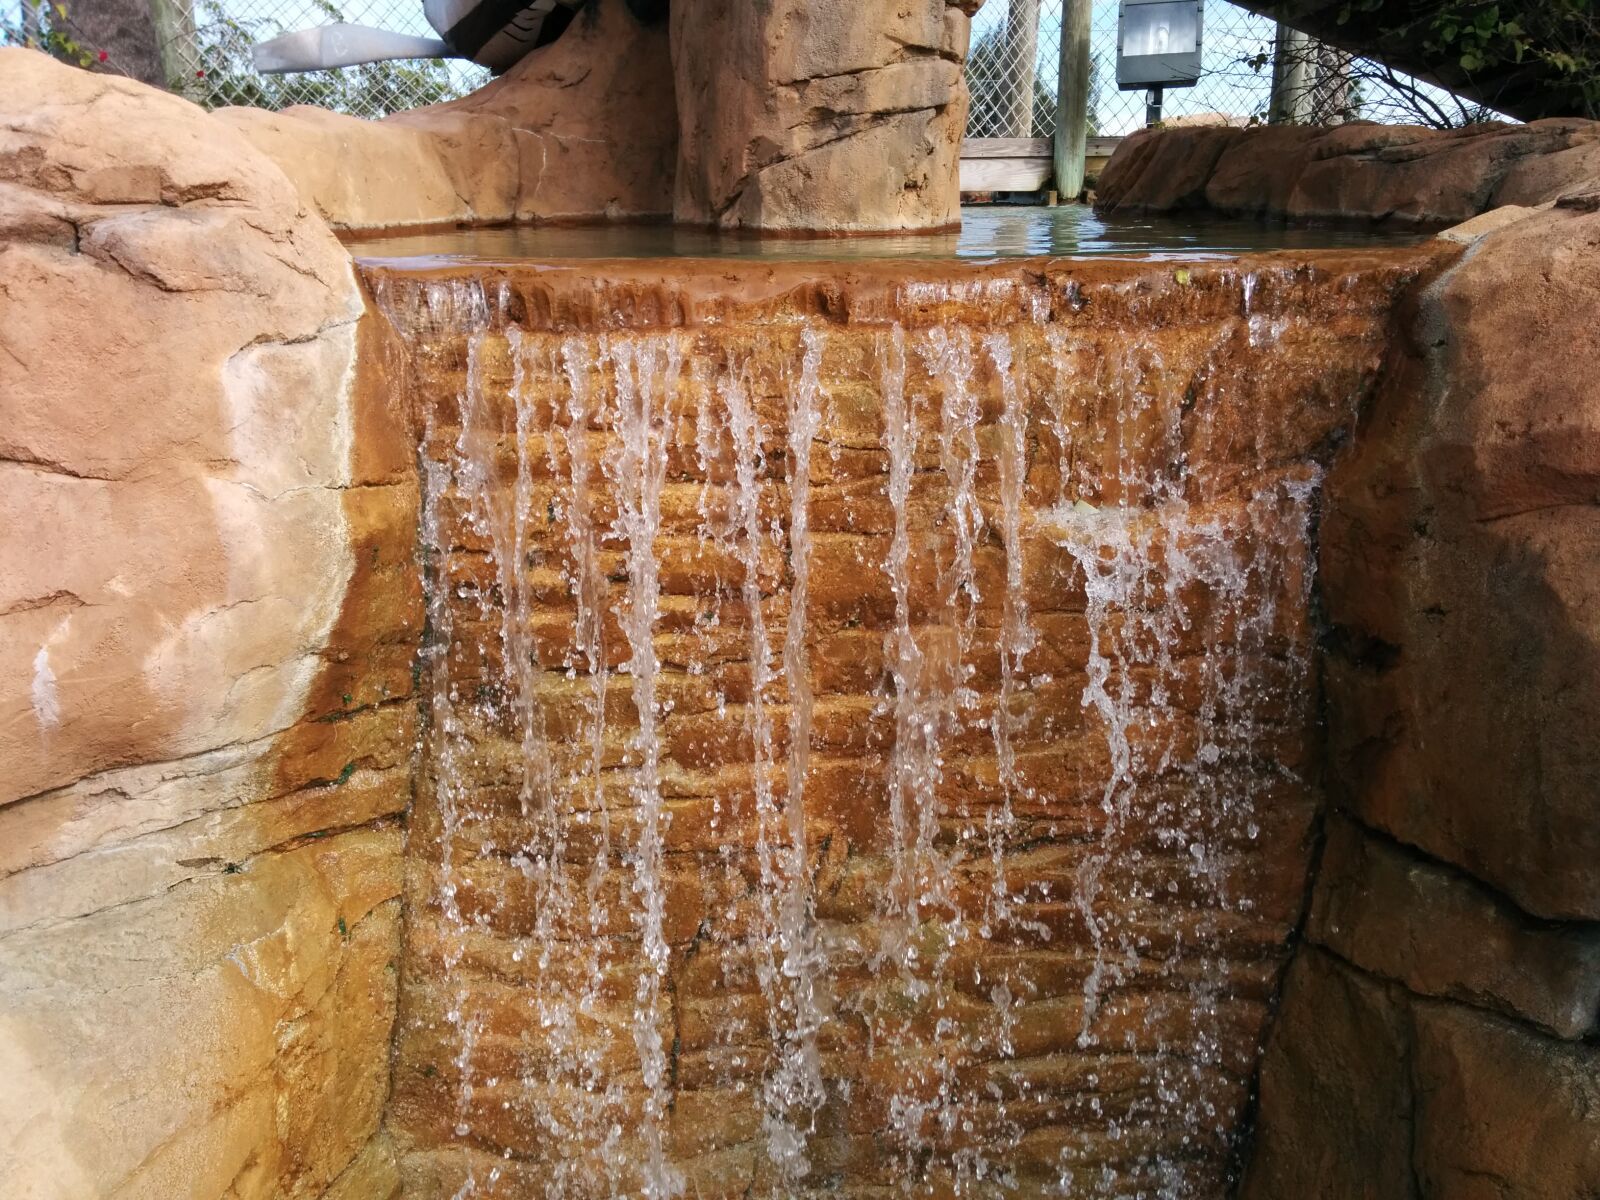 LG Nexus 5 sample photo. Waterfall, stone, nature photography